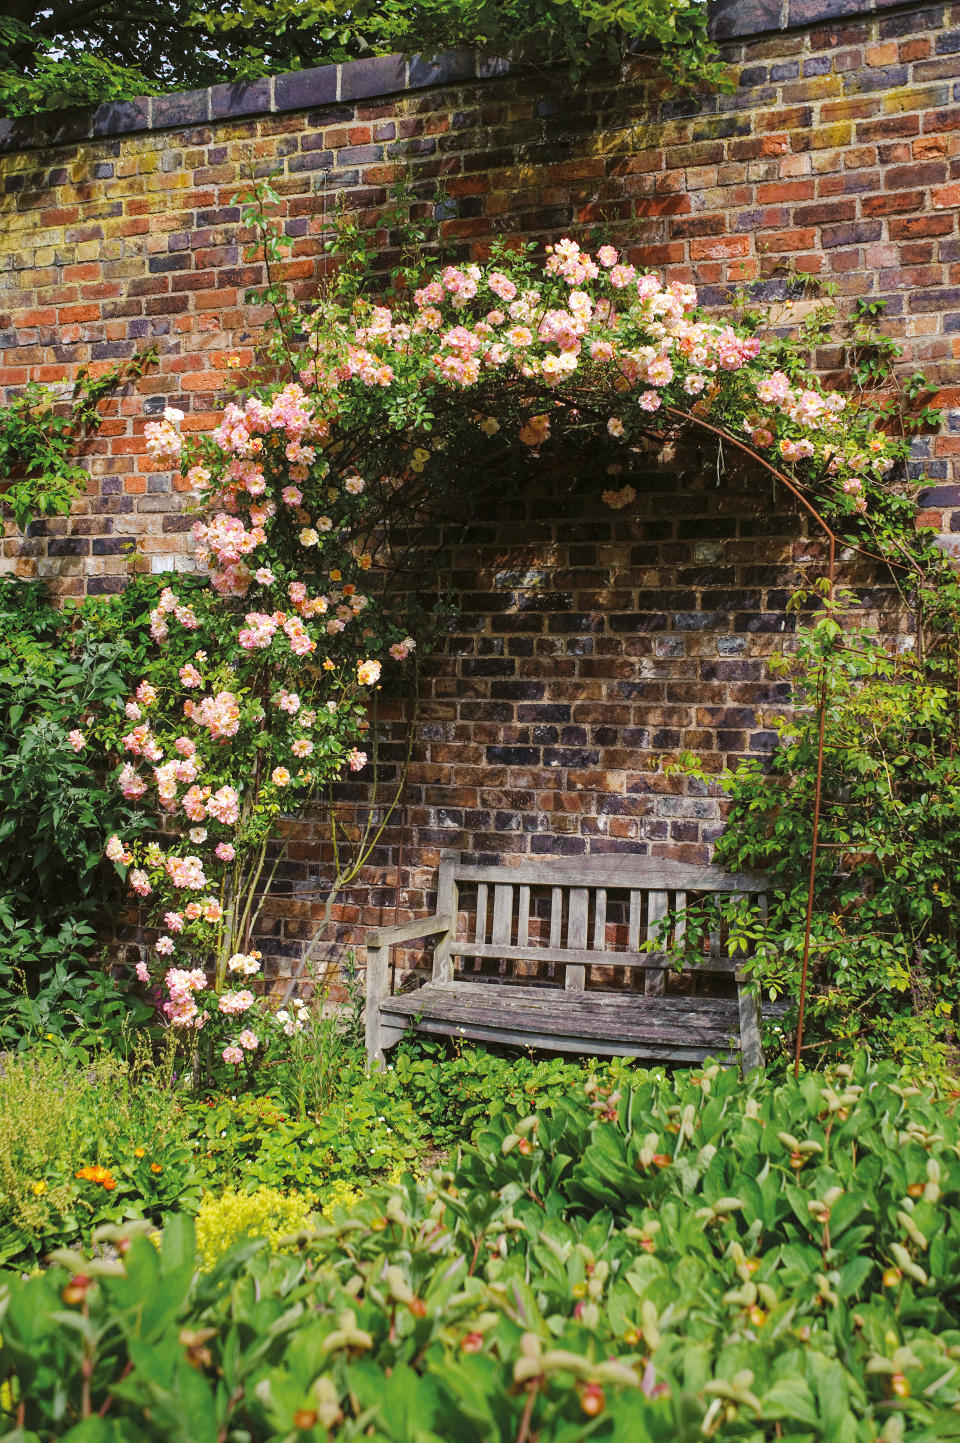 2. Grow a rose garden over a seating area